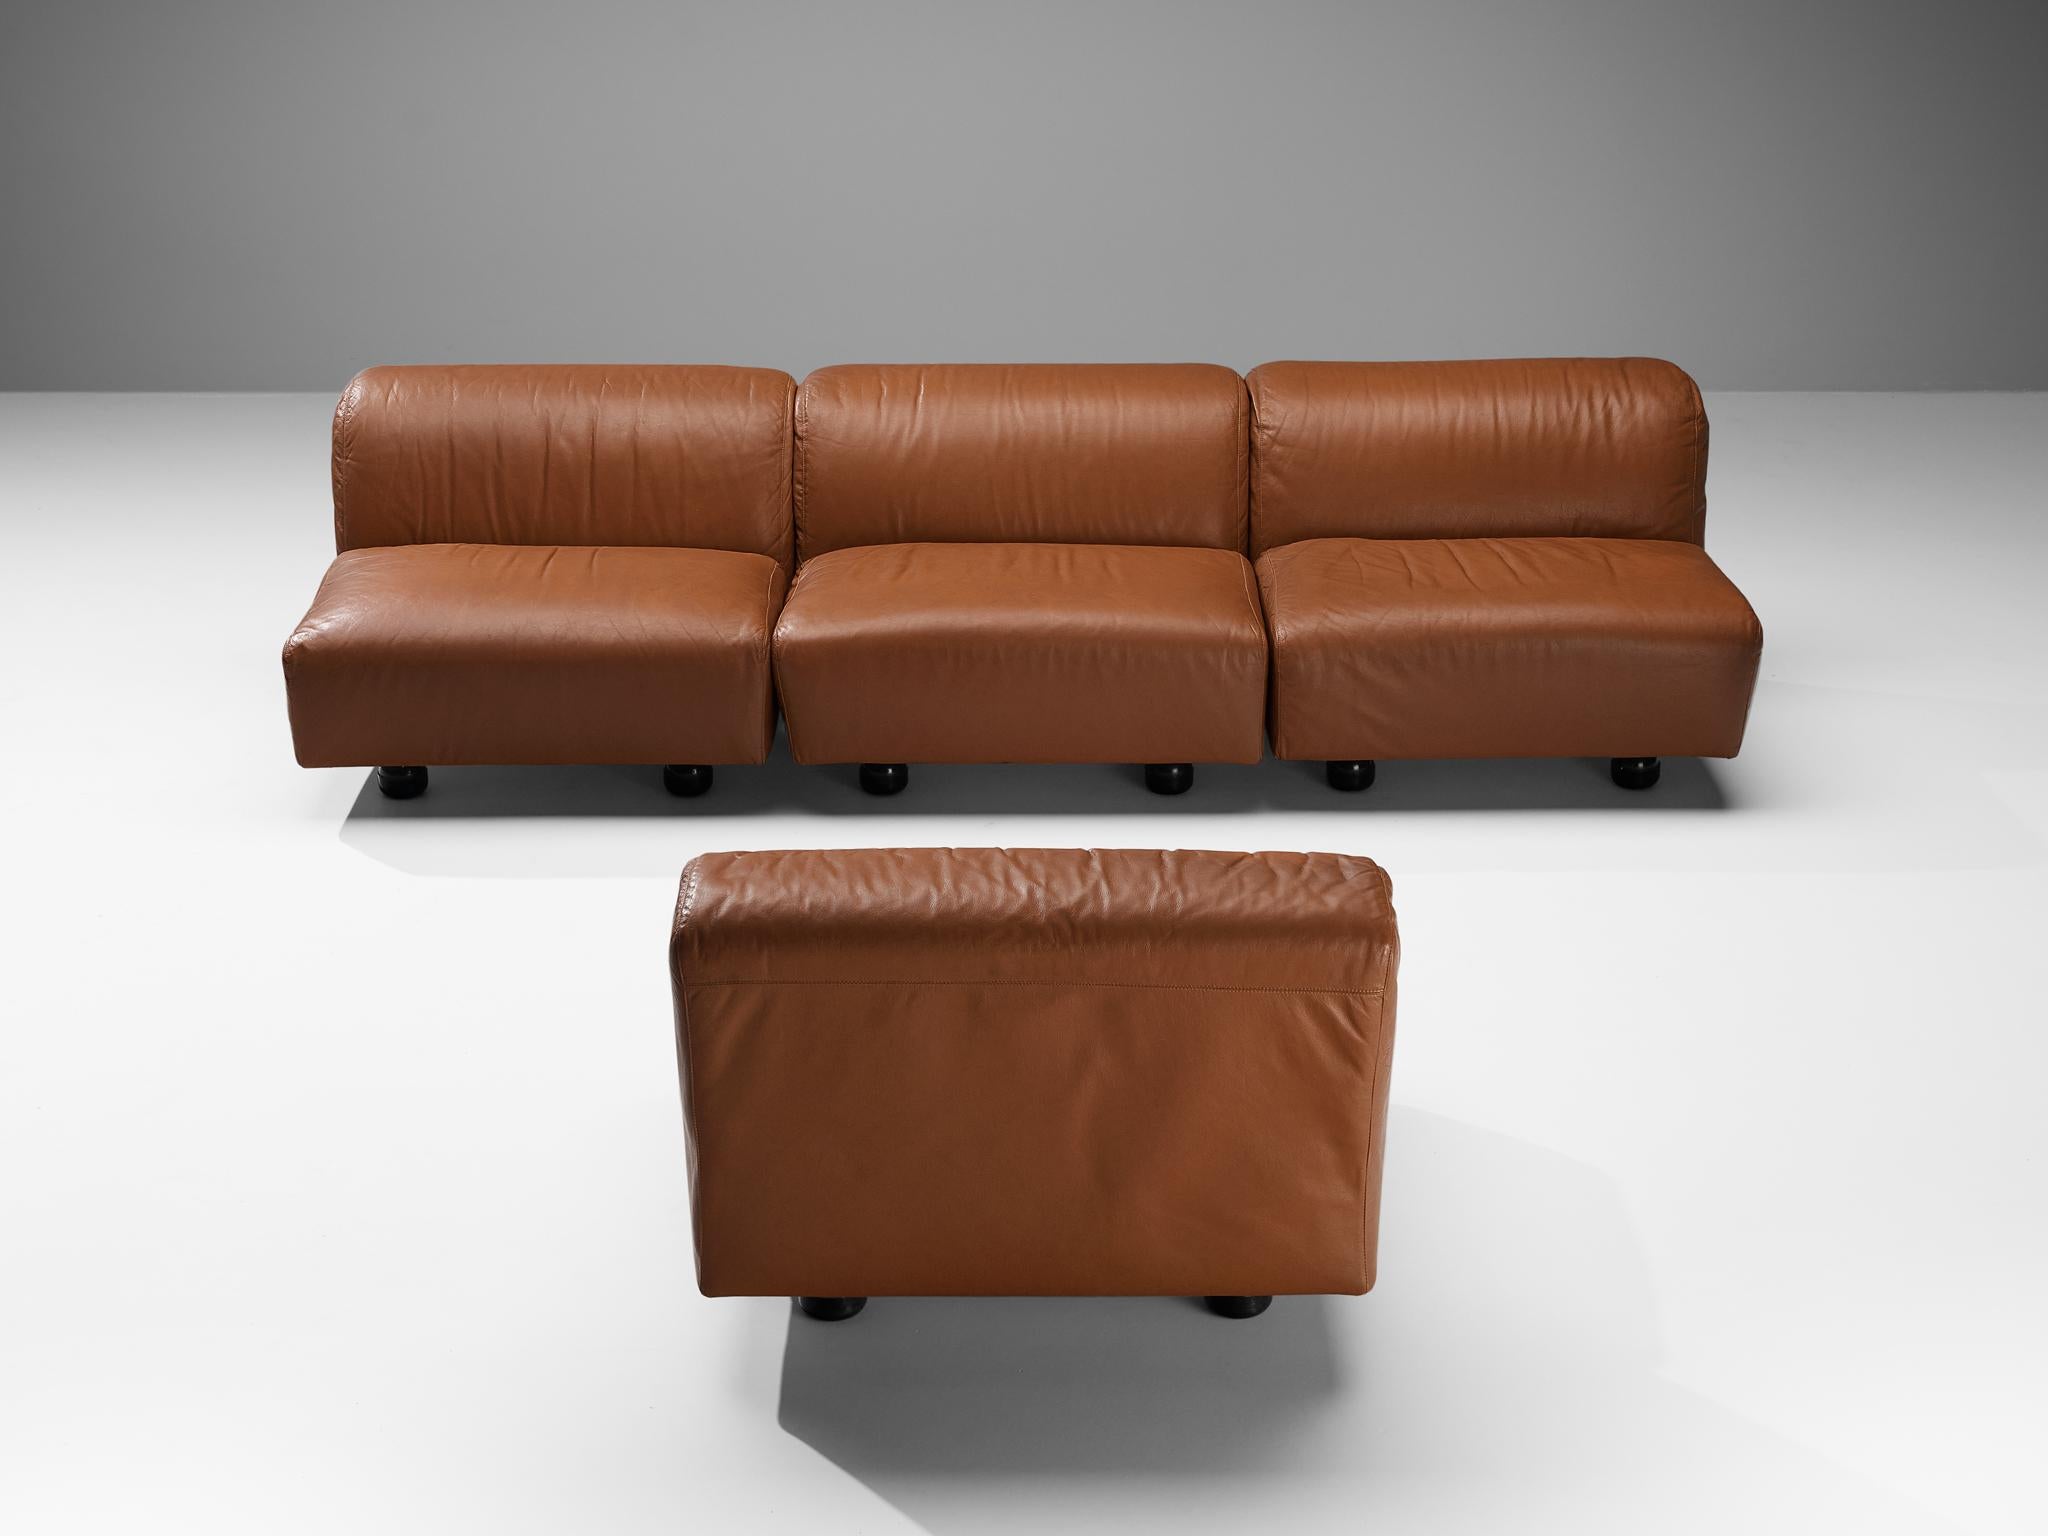 Vico Magistretti for Cassina 'Fiandra' Modular Sofa in Brown Leather For Sale 3